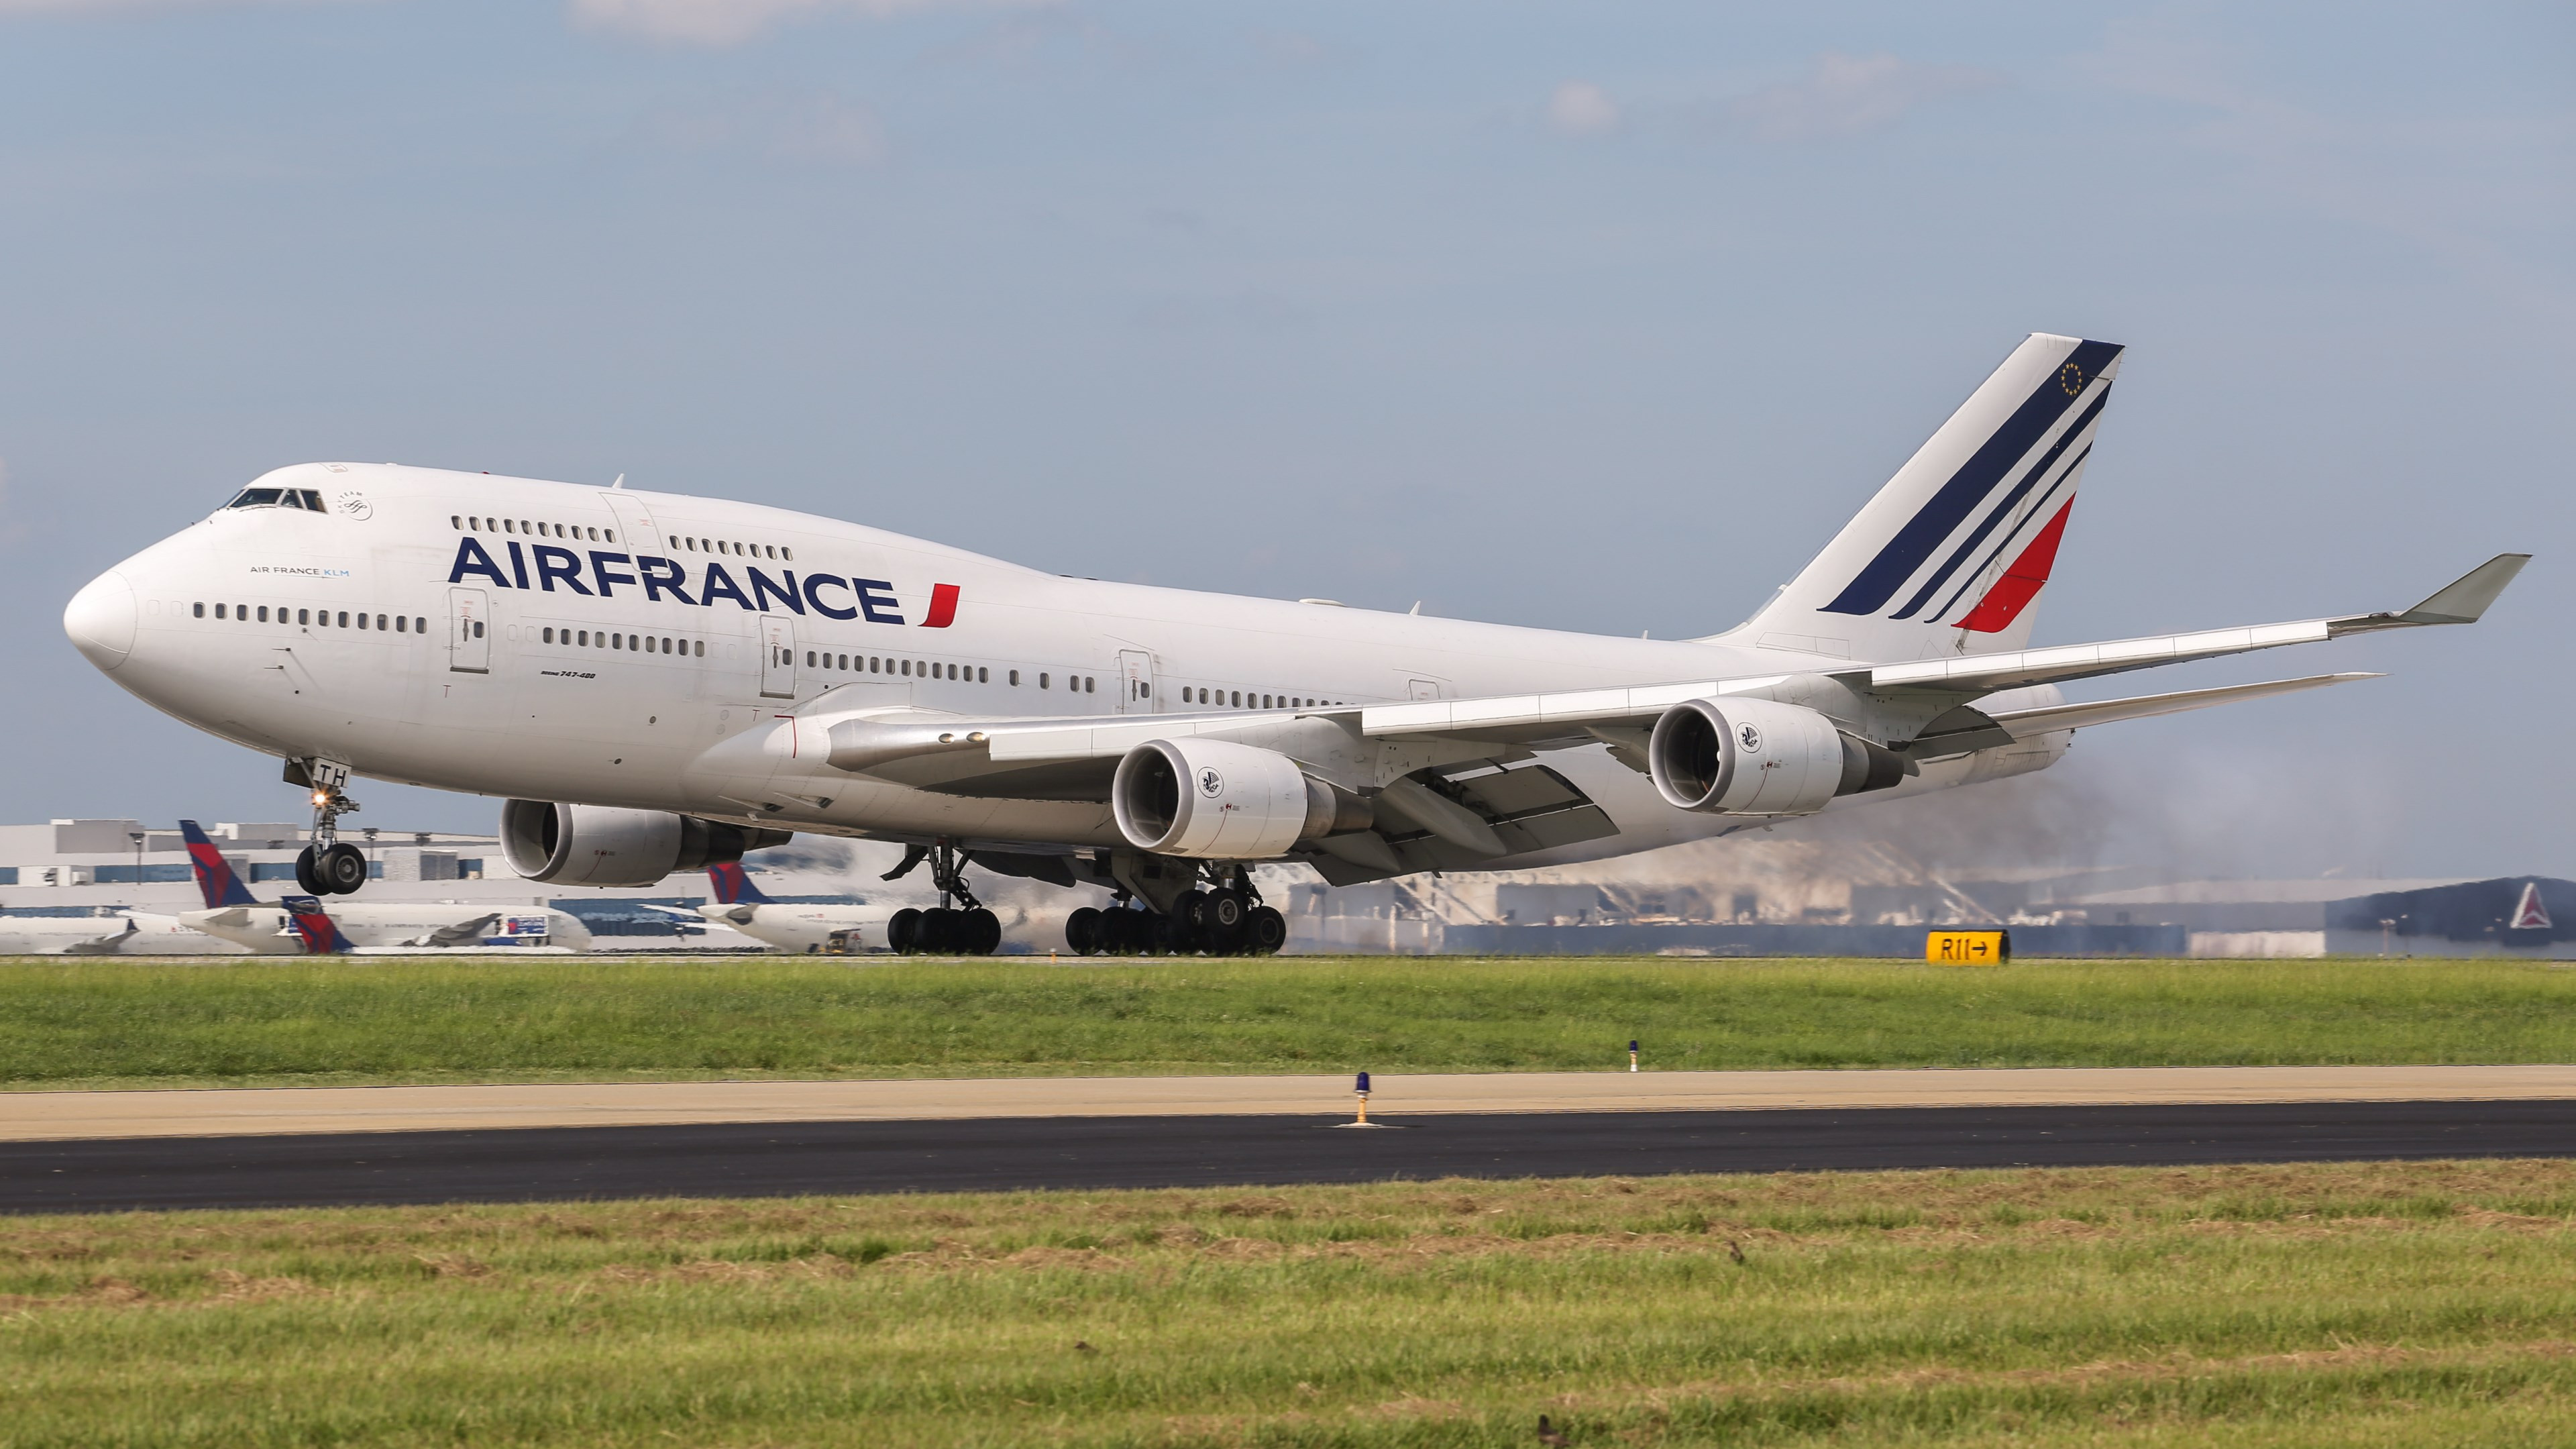 Air France Boeing 747 wallpaper 3840x2160